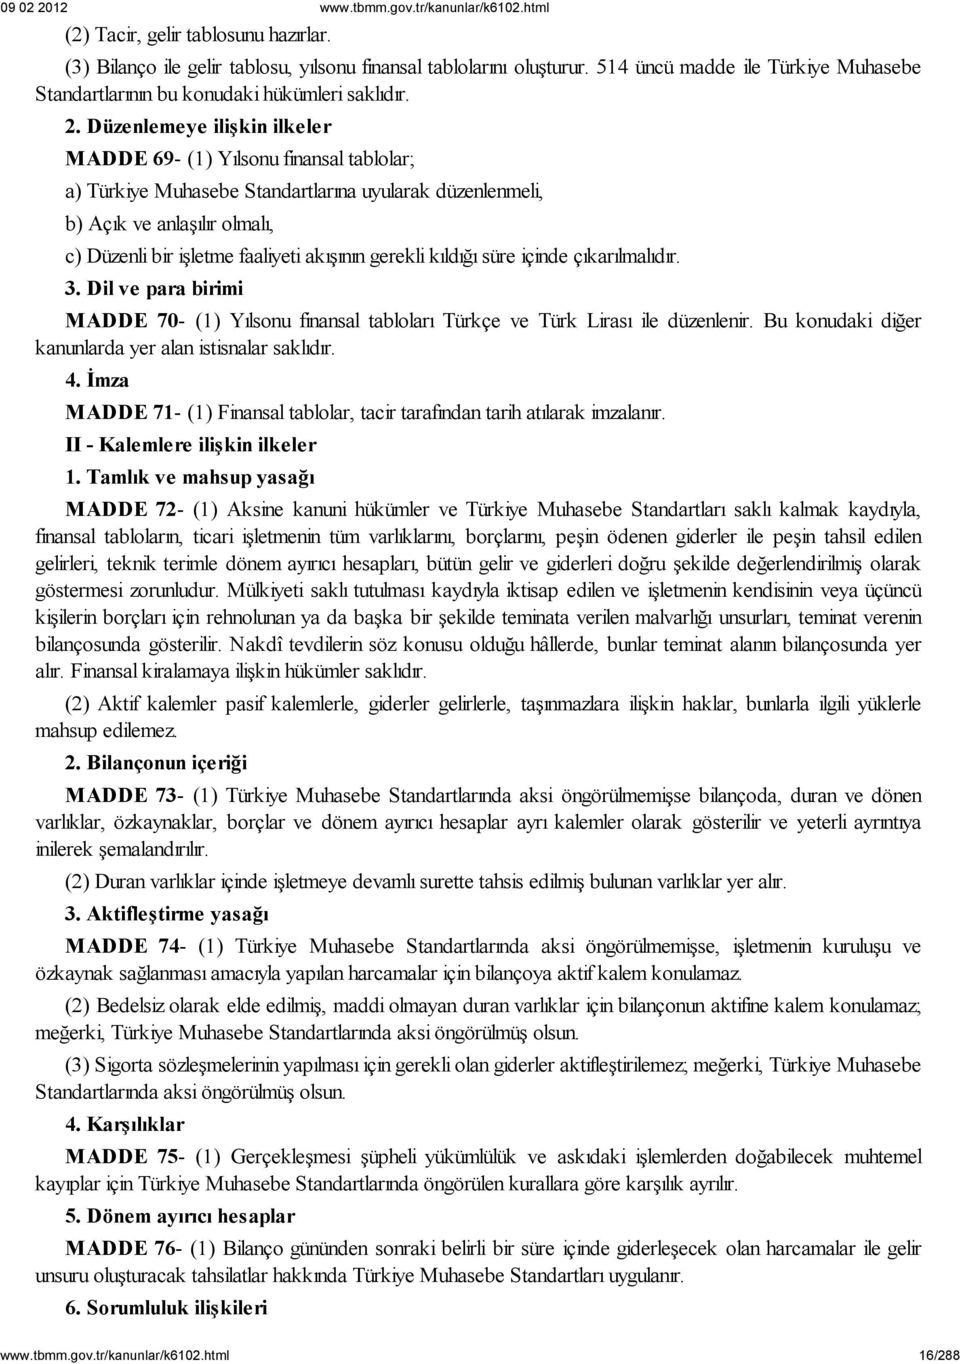 Düzenlemeye ilişkin ilkeler MADDE 69- (1) Yılsonu finansal tablolar; a) Türkiye Muhasebe Standartlarına uyularak düzenlenmeli, b) Açık ve anlaşılır olmalı, c) Düzenli bir işletme faaliyeti akışının